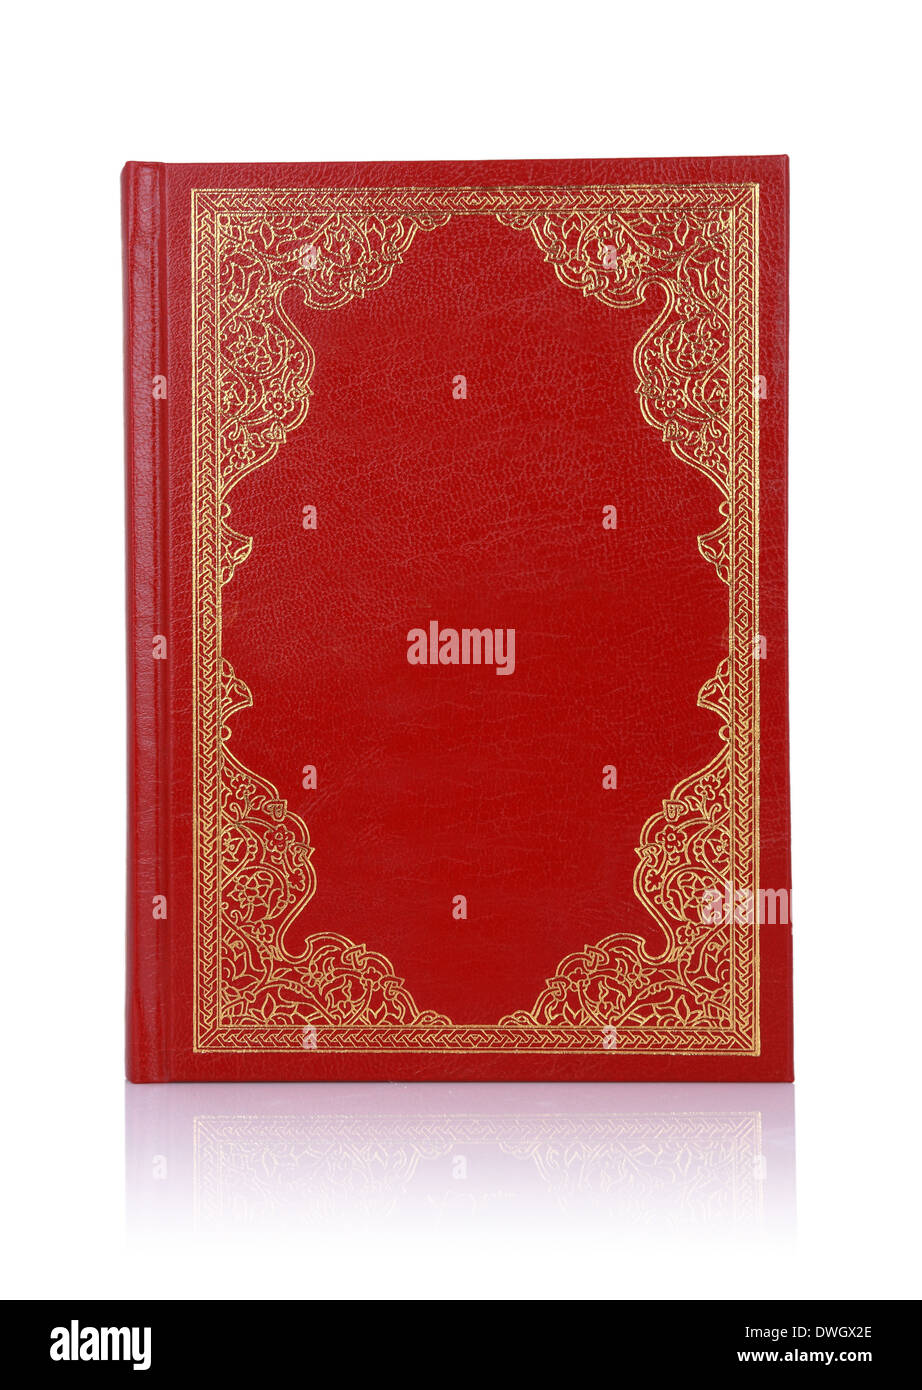 Alte rote Buch mit Goldfarbe Ornament auf Umschlag isoliert auf weiss Stockfoto